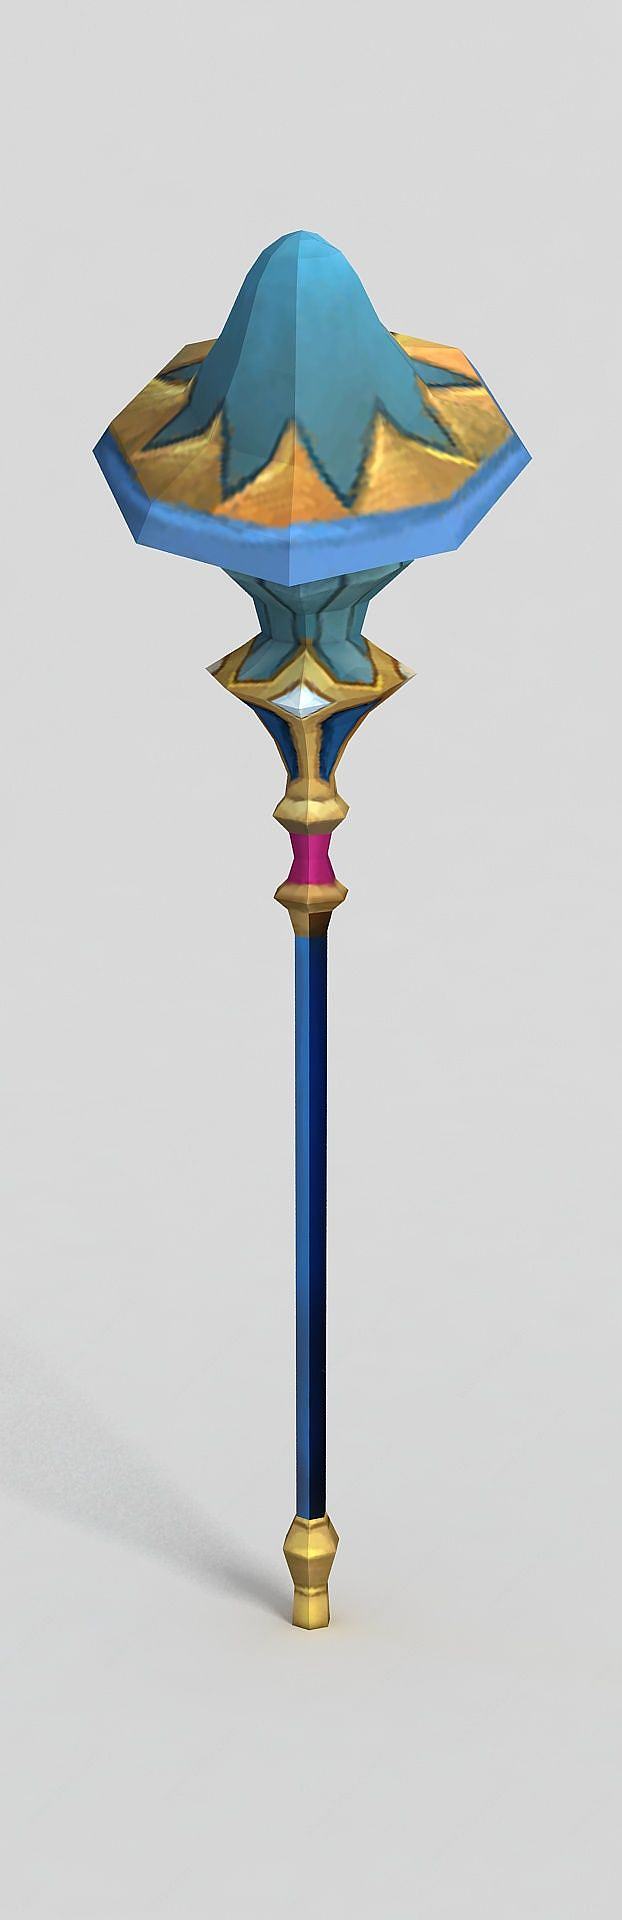 龙之谷游戏武器权杖3D模型